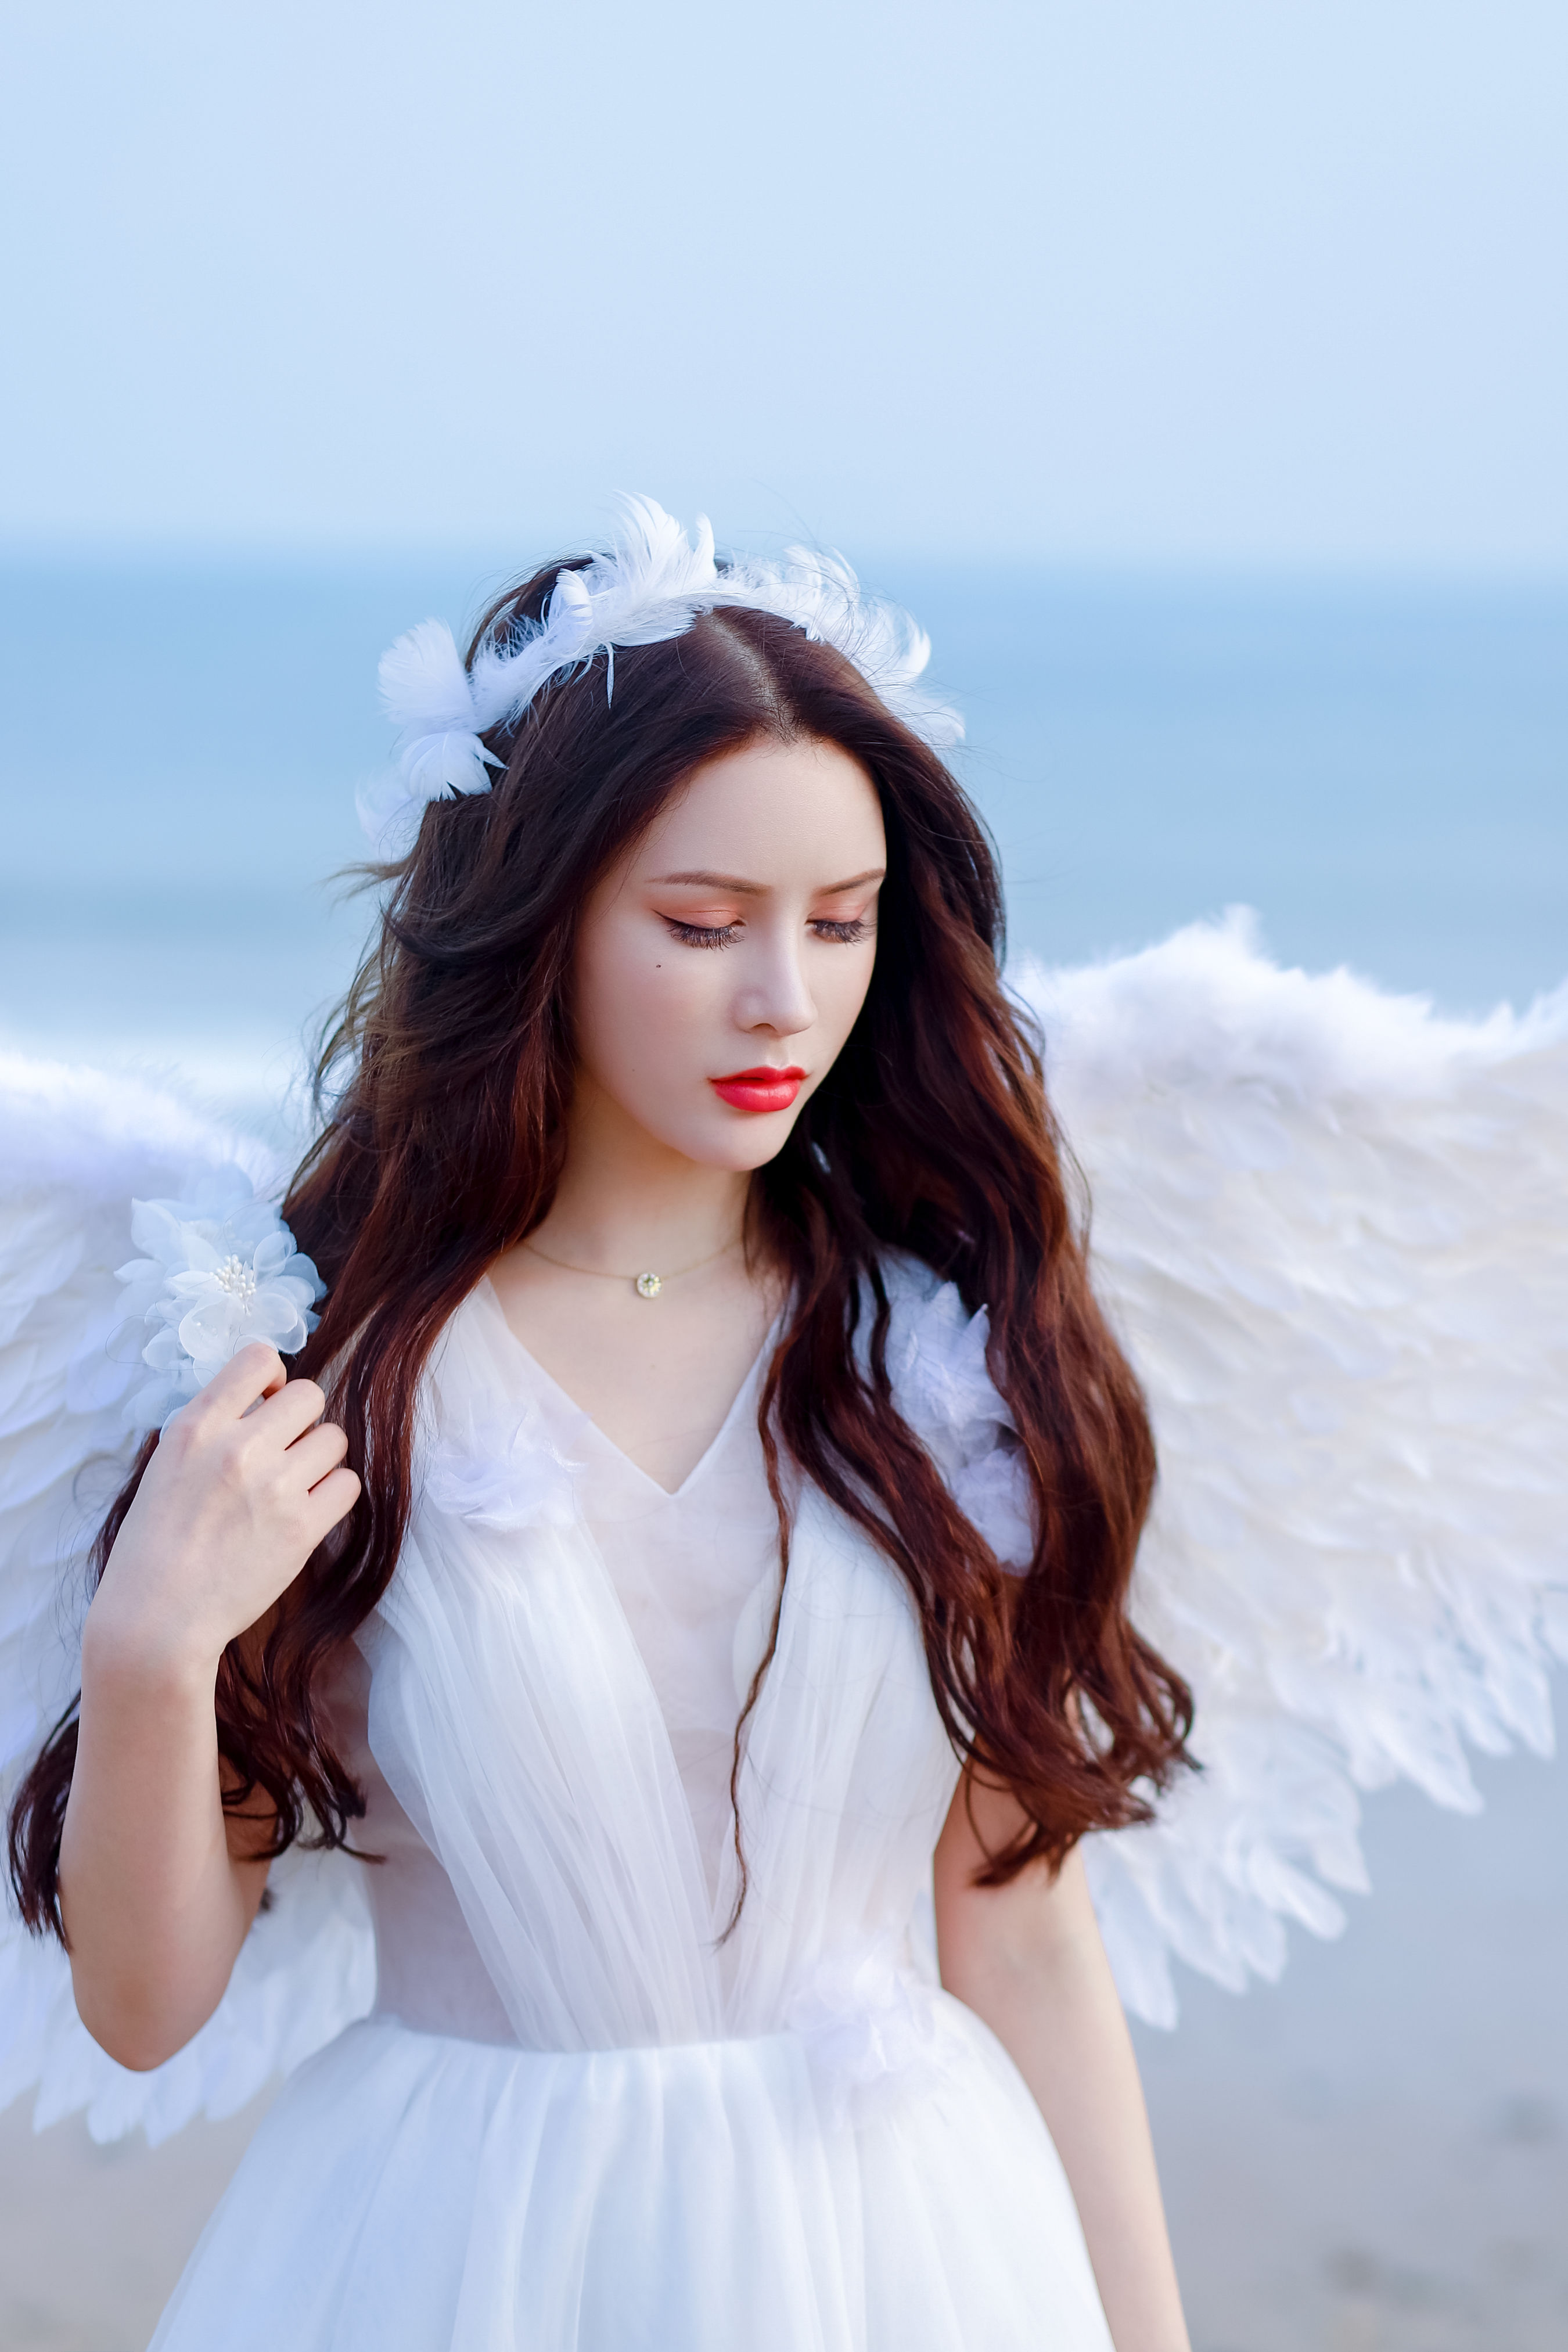 天使 漂亮 优美 优雅 女郎 天使